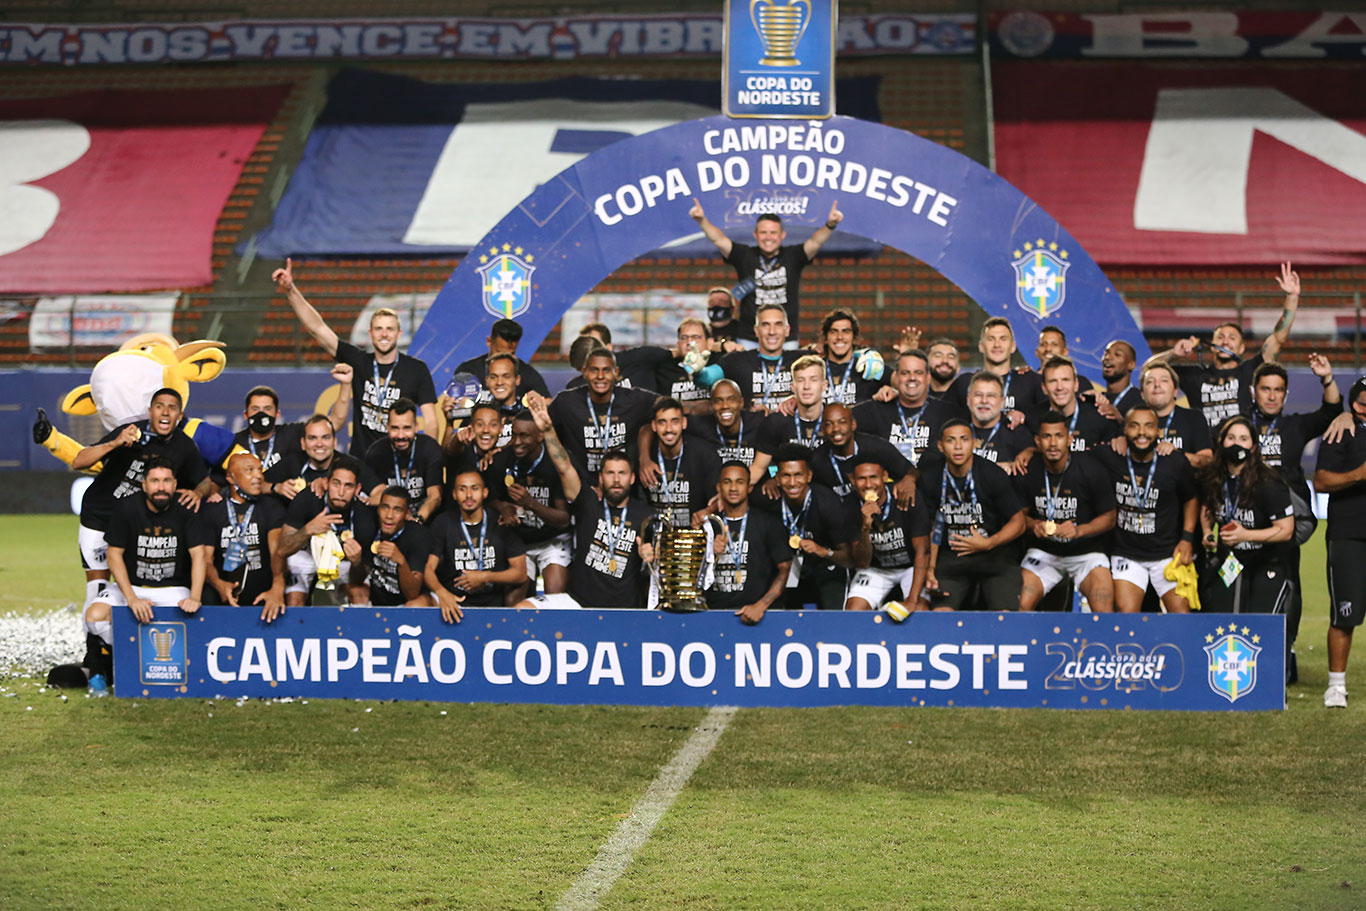 Futebol cearense está dominando o Nordeste. Depois do Fortaleza em 2019, foi a vez do Ceará se sagrar campeão da Copa do Nordeste 2020 (Foto: Felipe Santos/cearasc.com)